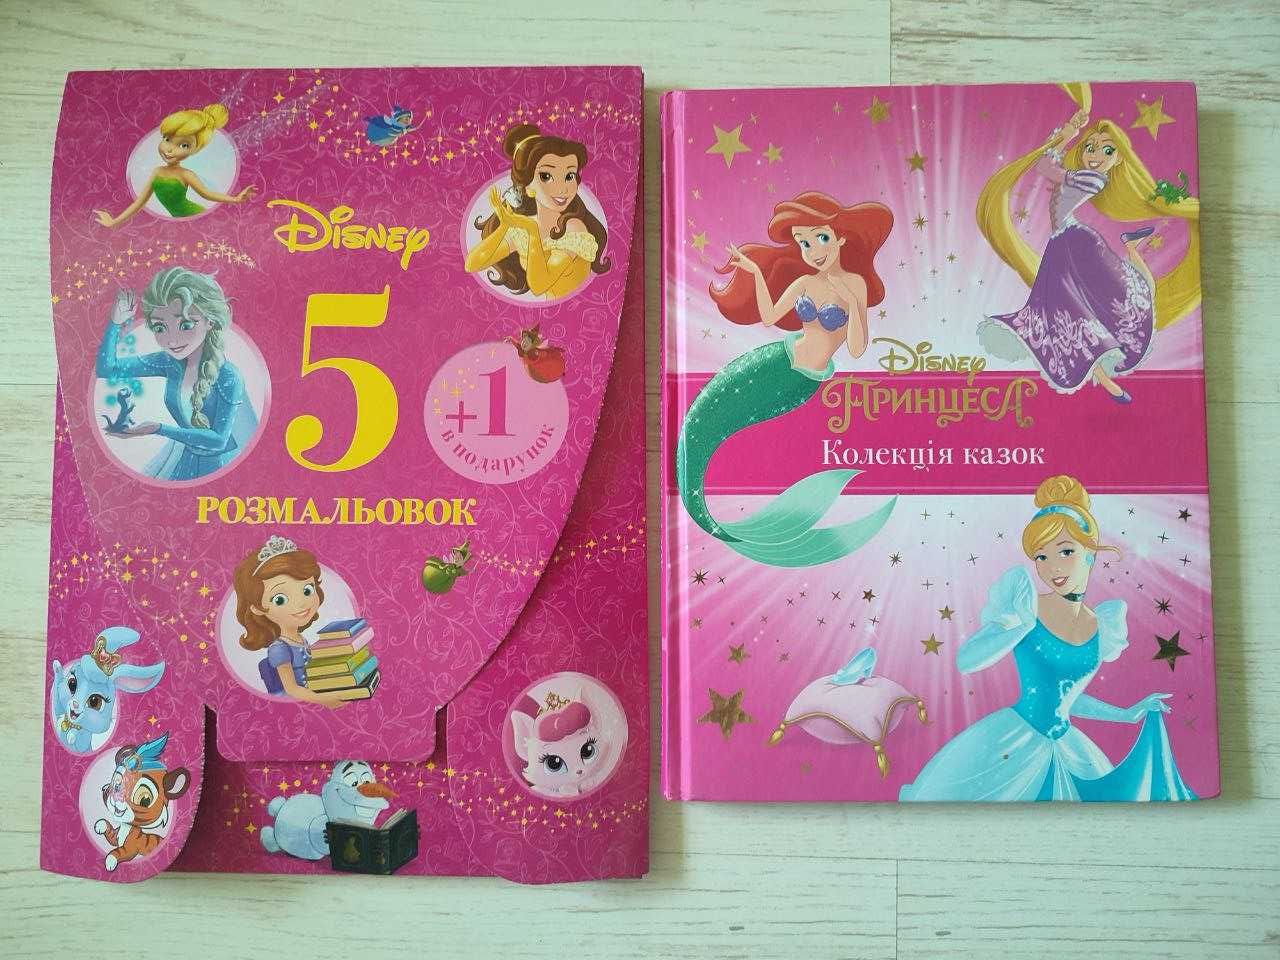 Продается детская книга Disney. Коллекция сказок. Принцесса